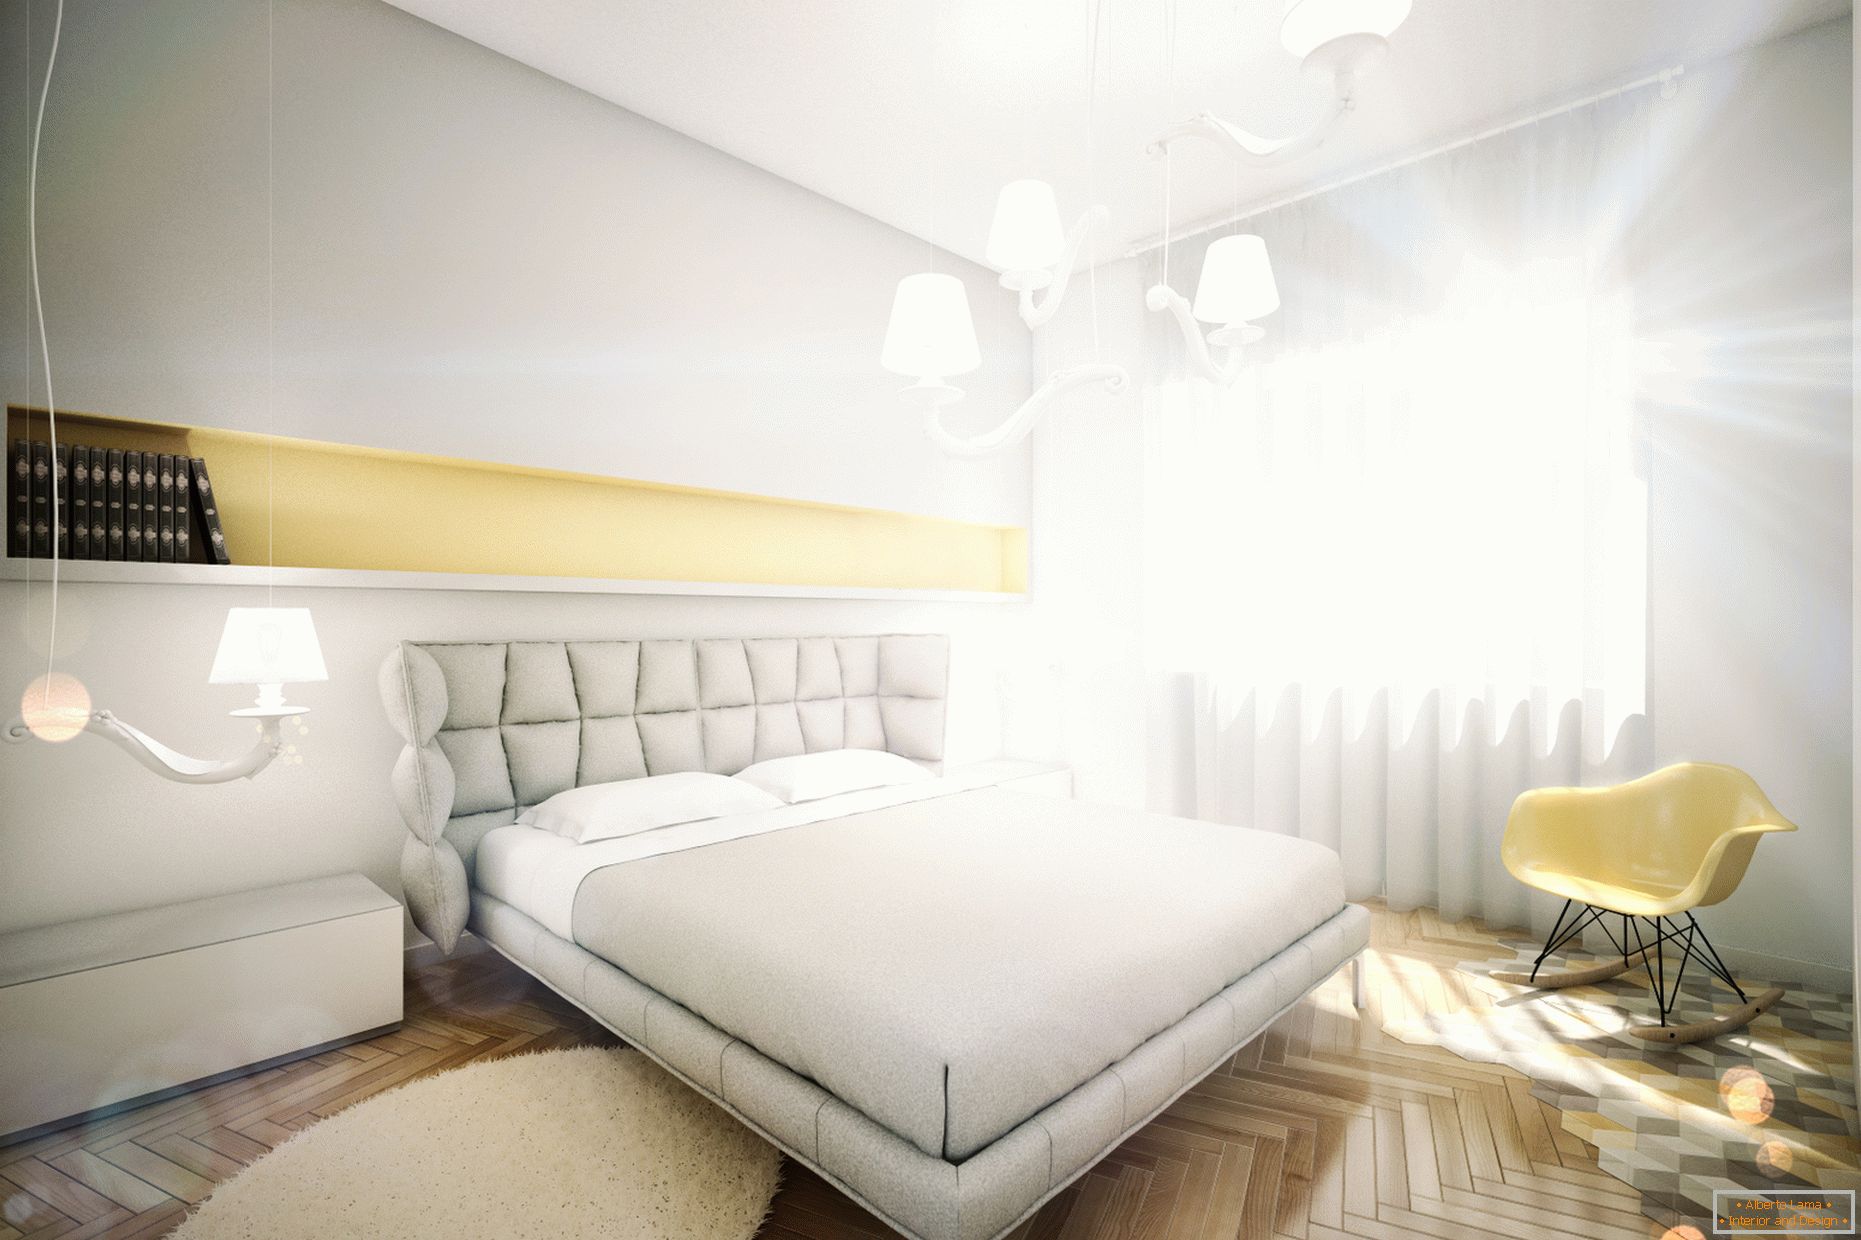 Zaprojektuj mieszkanie w pastelowych kolorach: sypialni